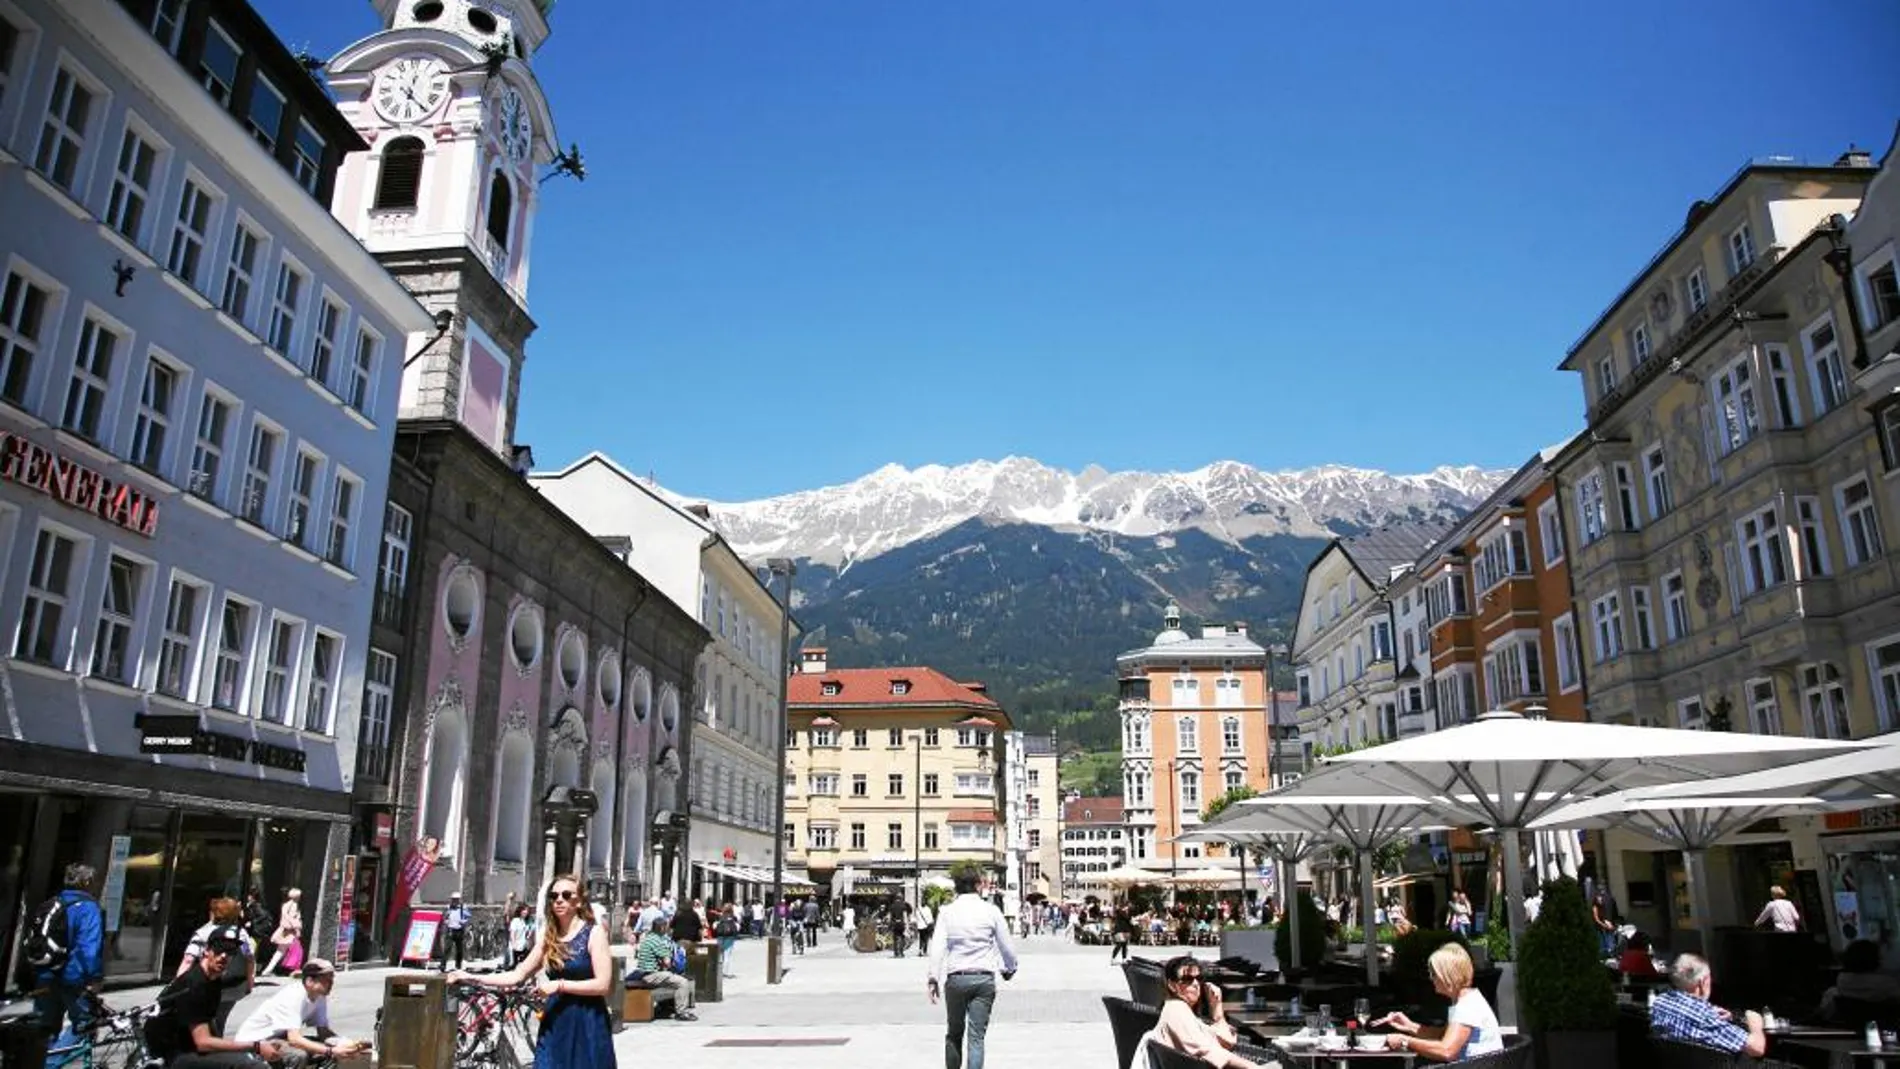 Durante el verano, las calles de la ciudad austriaca se llenan de vida y actividad al aire libre.